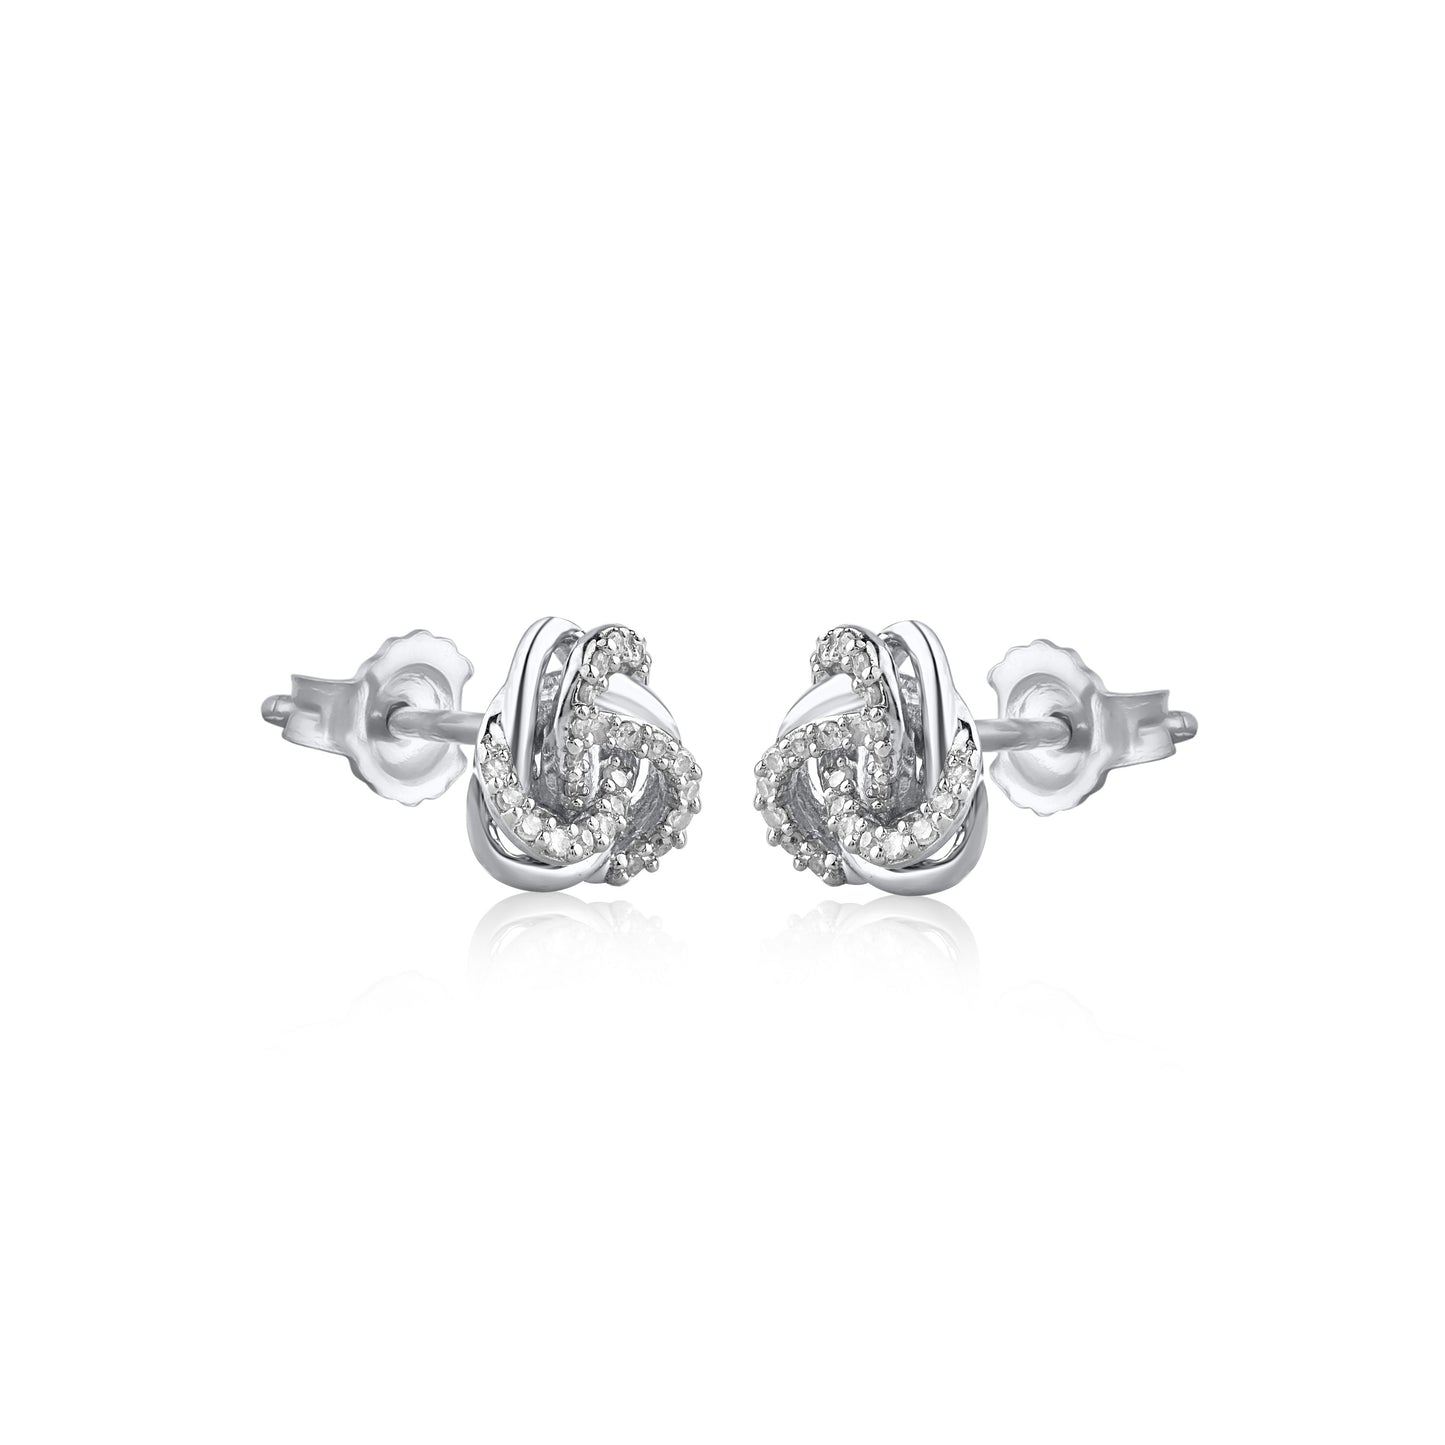 Intertwined Stud Earrings in .925 Sterling Silver